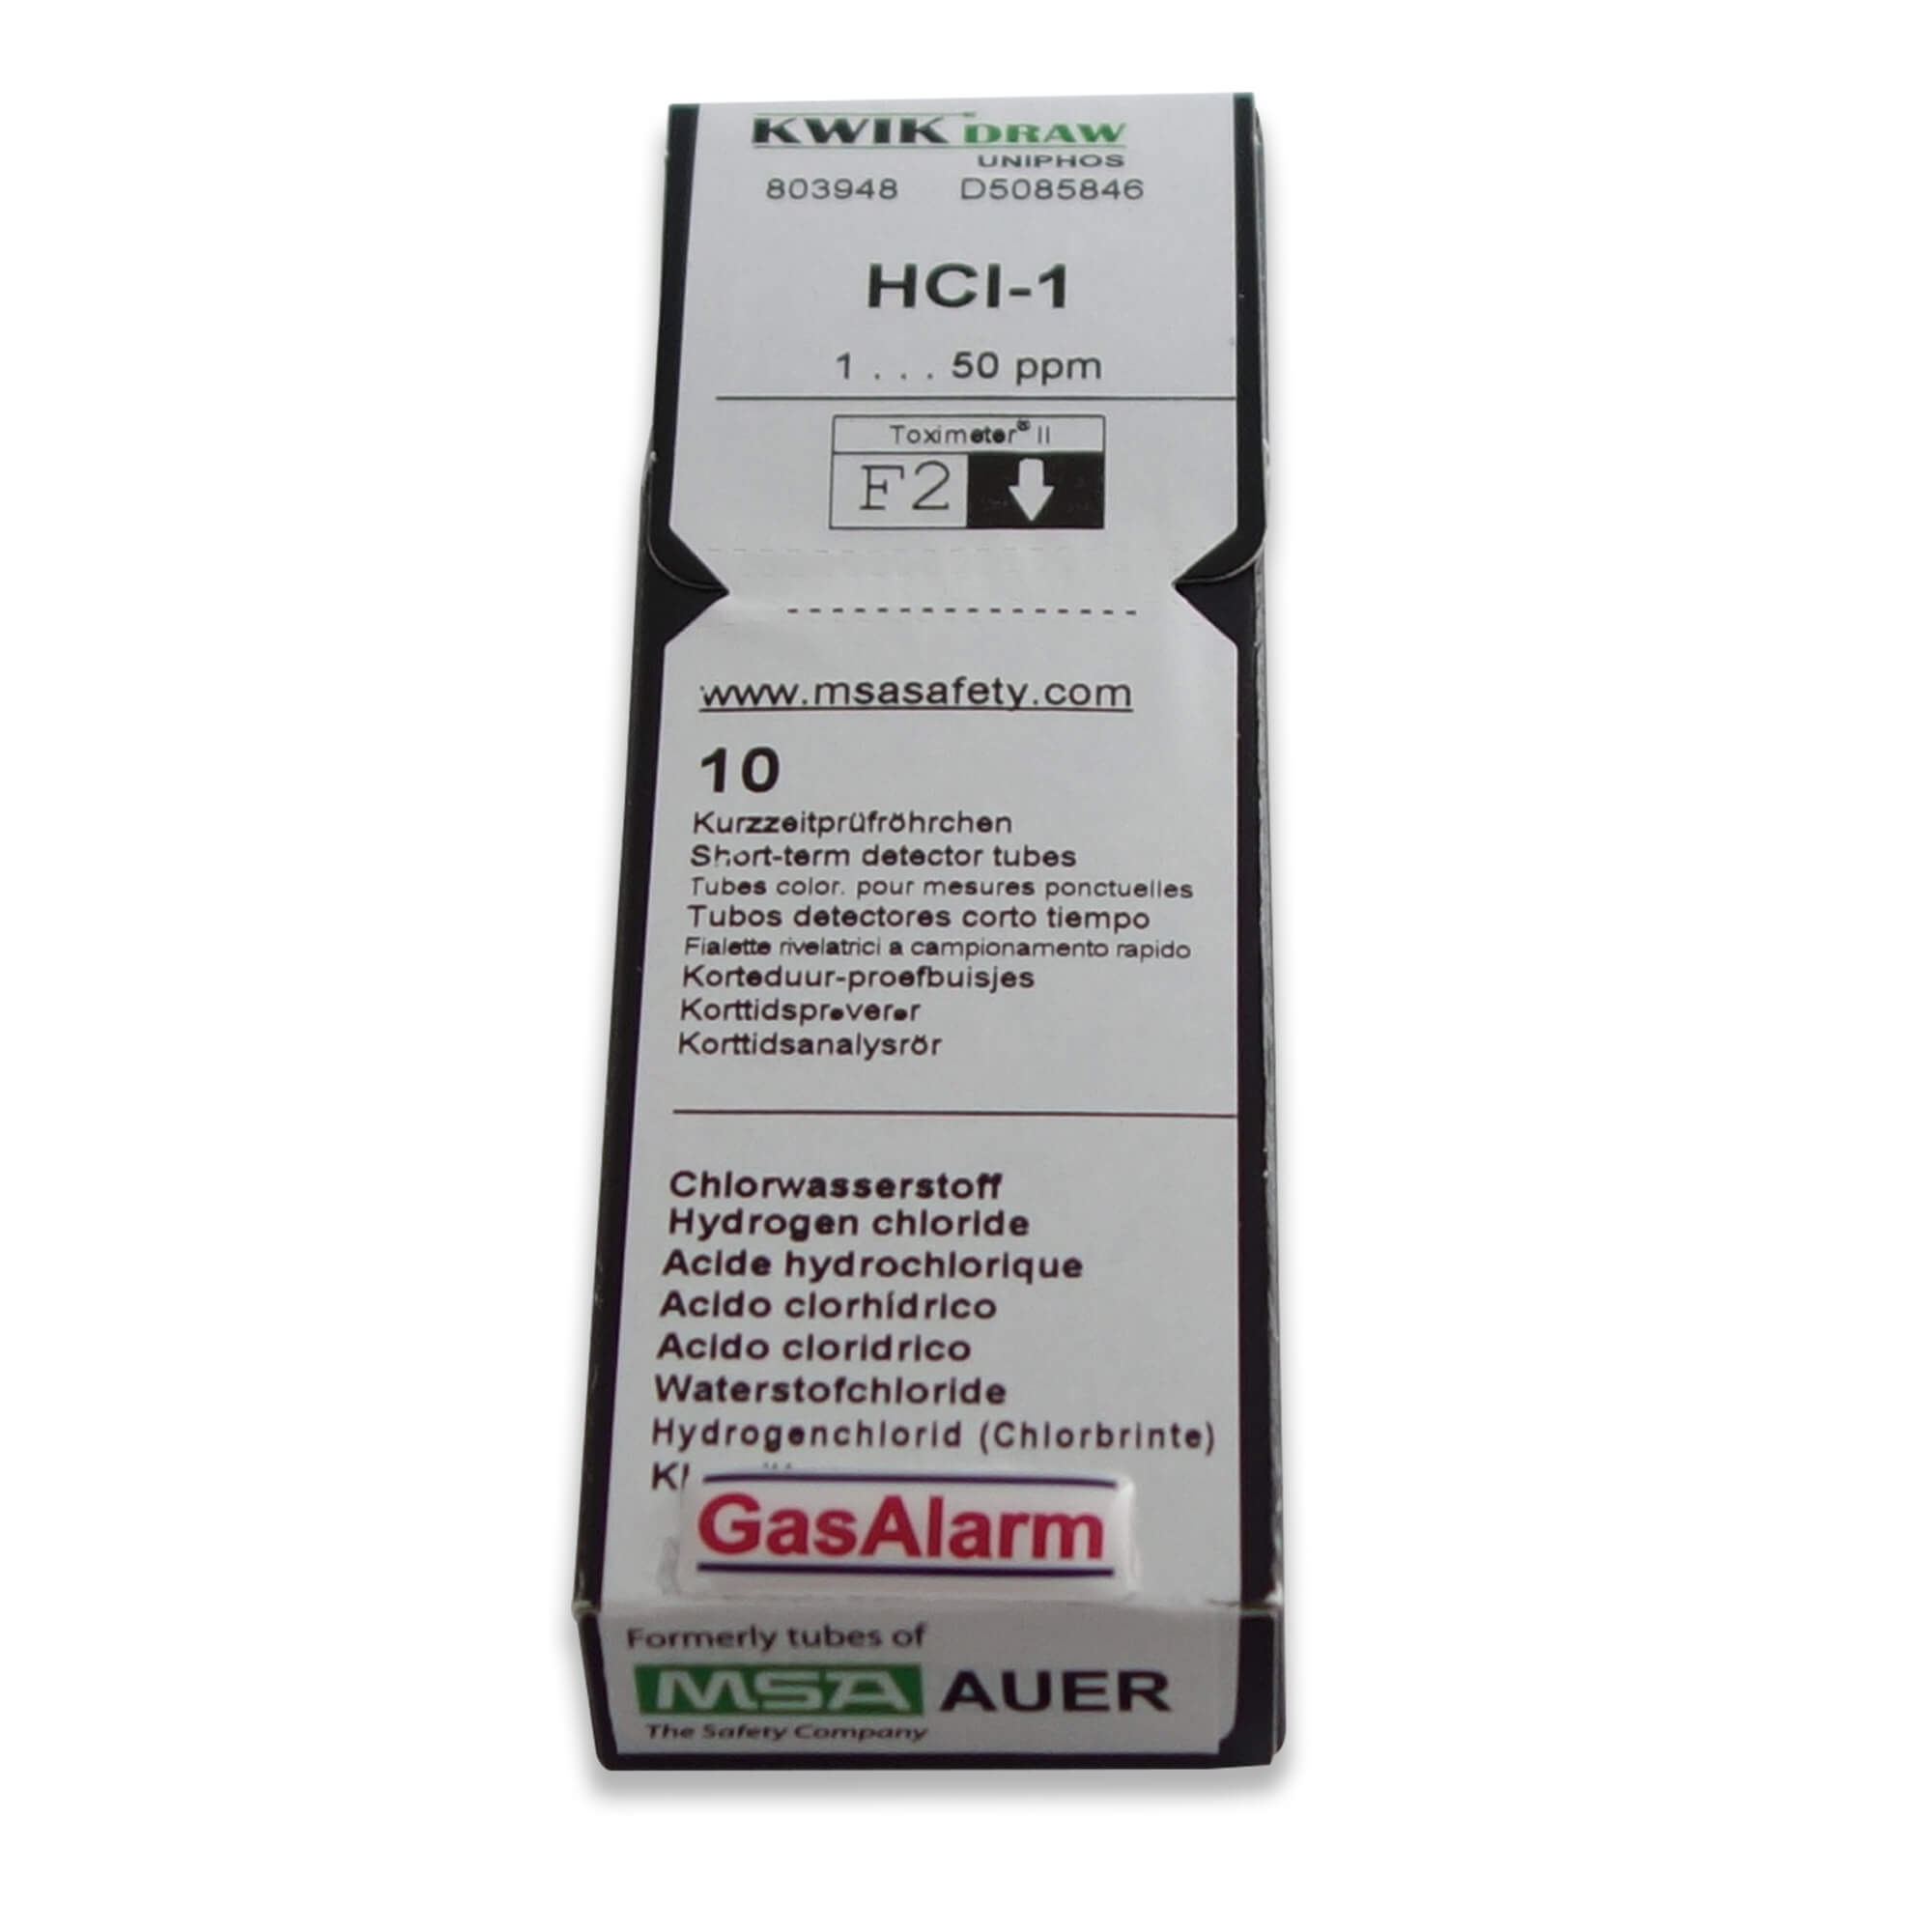 D5085835 - Carbon Monoxide Gas Detection Tubes